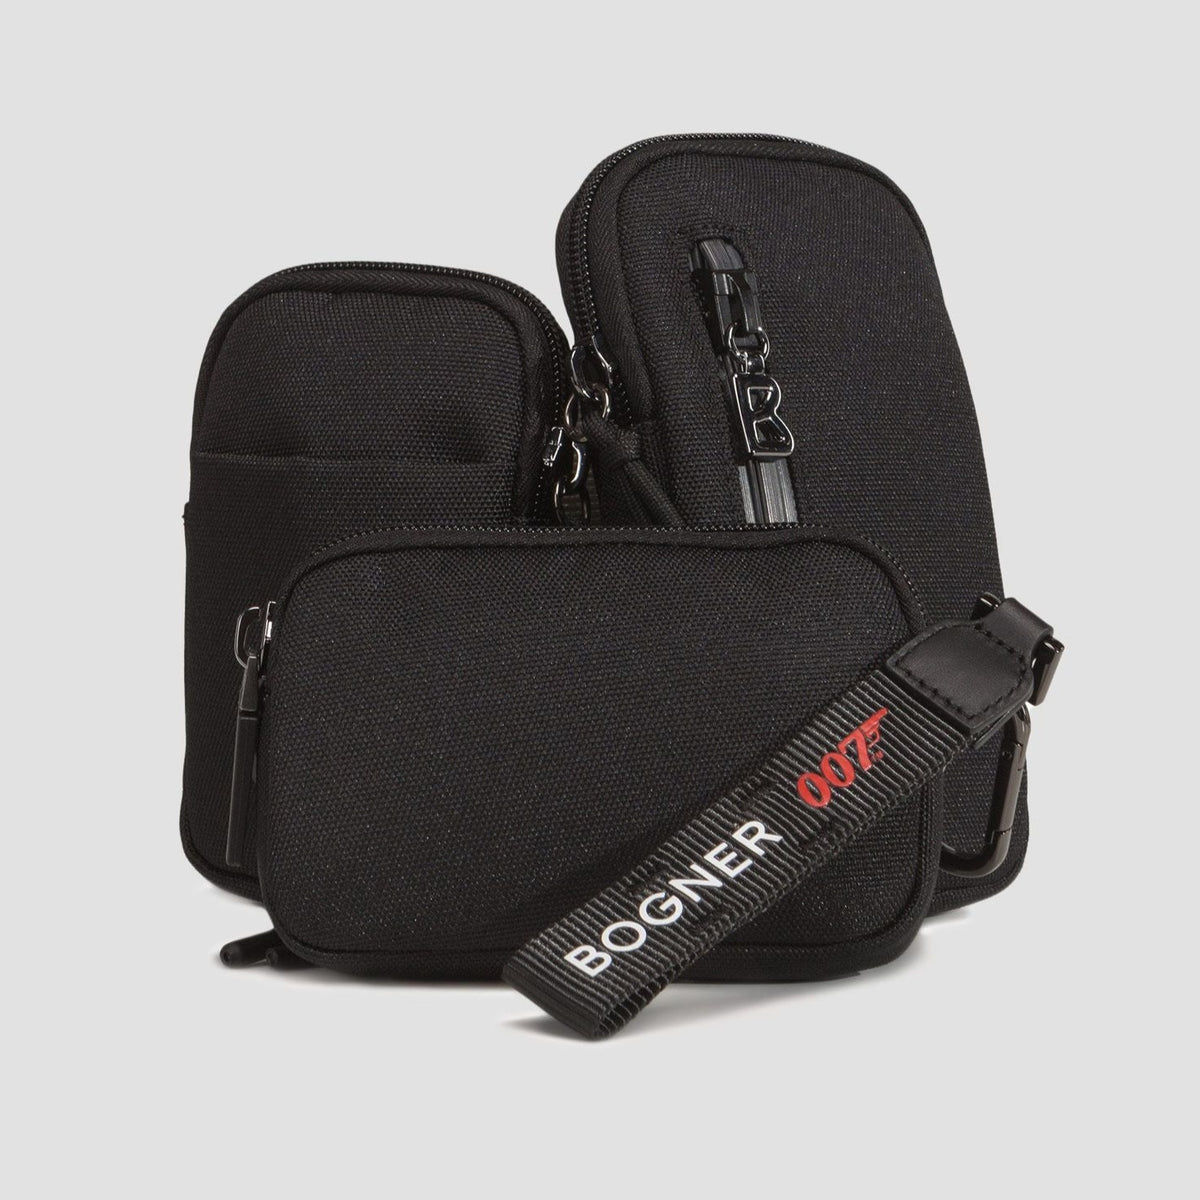 James Bond Multi Pocket Belt Bag - By Bogner